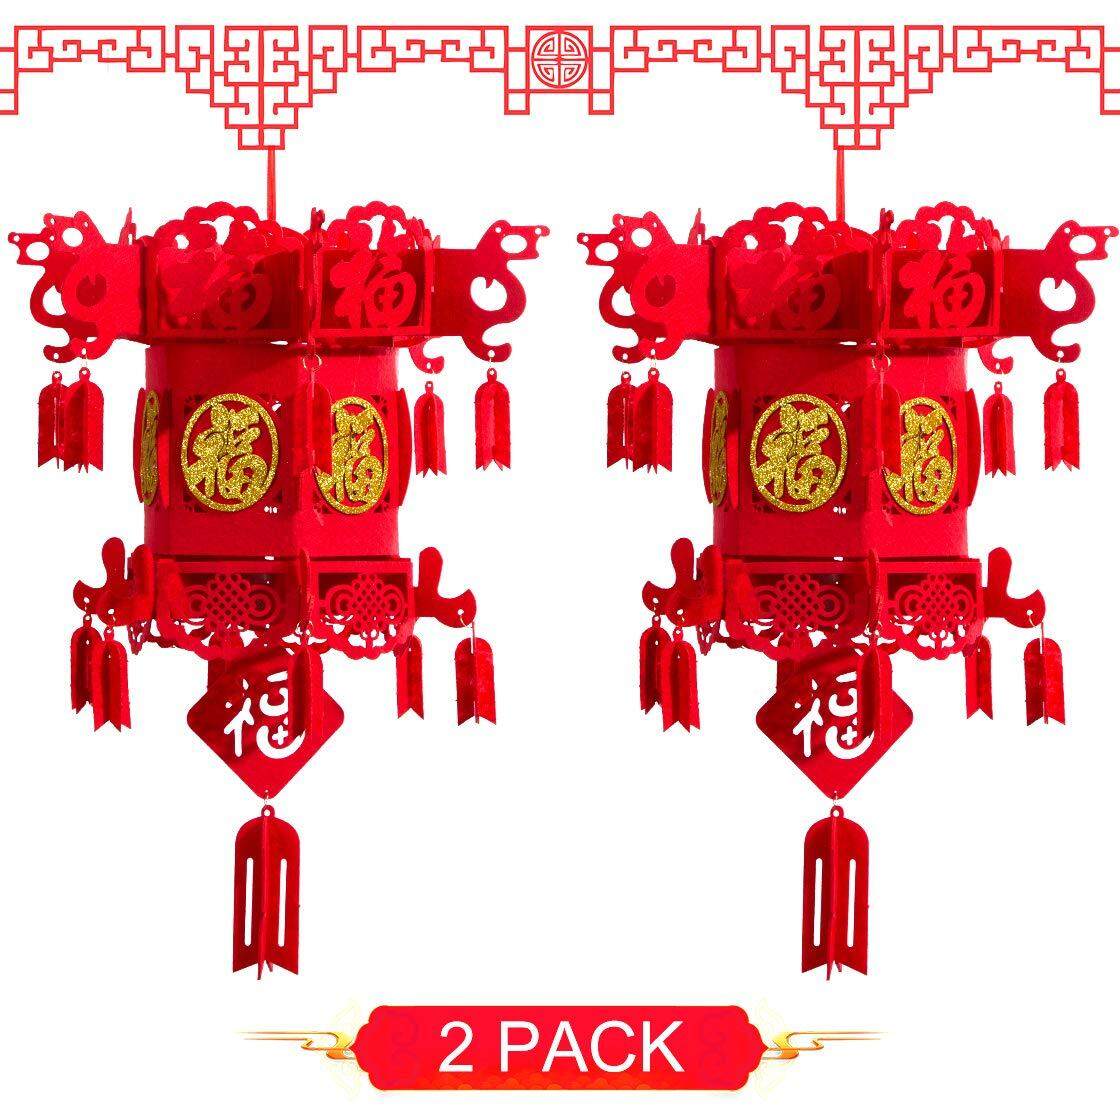 โคมไฟจีนสีแดง 2 ชิ้นของตกแต่งสำหรับเทศกาลตรุษจีนเทศกาลฤดูใบไม้ผลิจีนงานแต่งงานการตกแต่งเทศกาลโคมไฟ Golden Fu